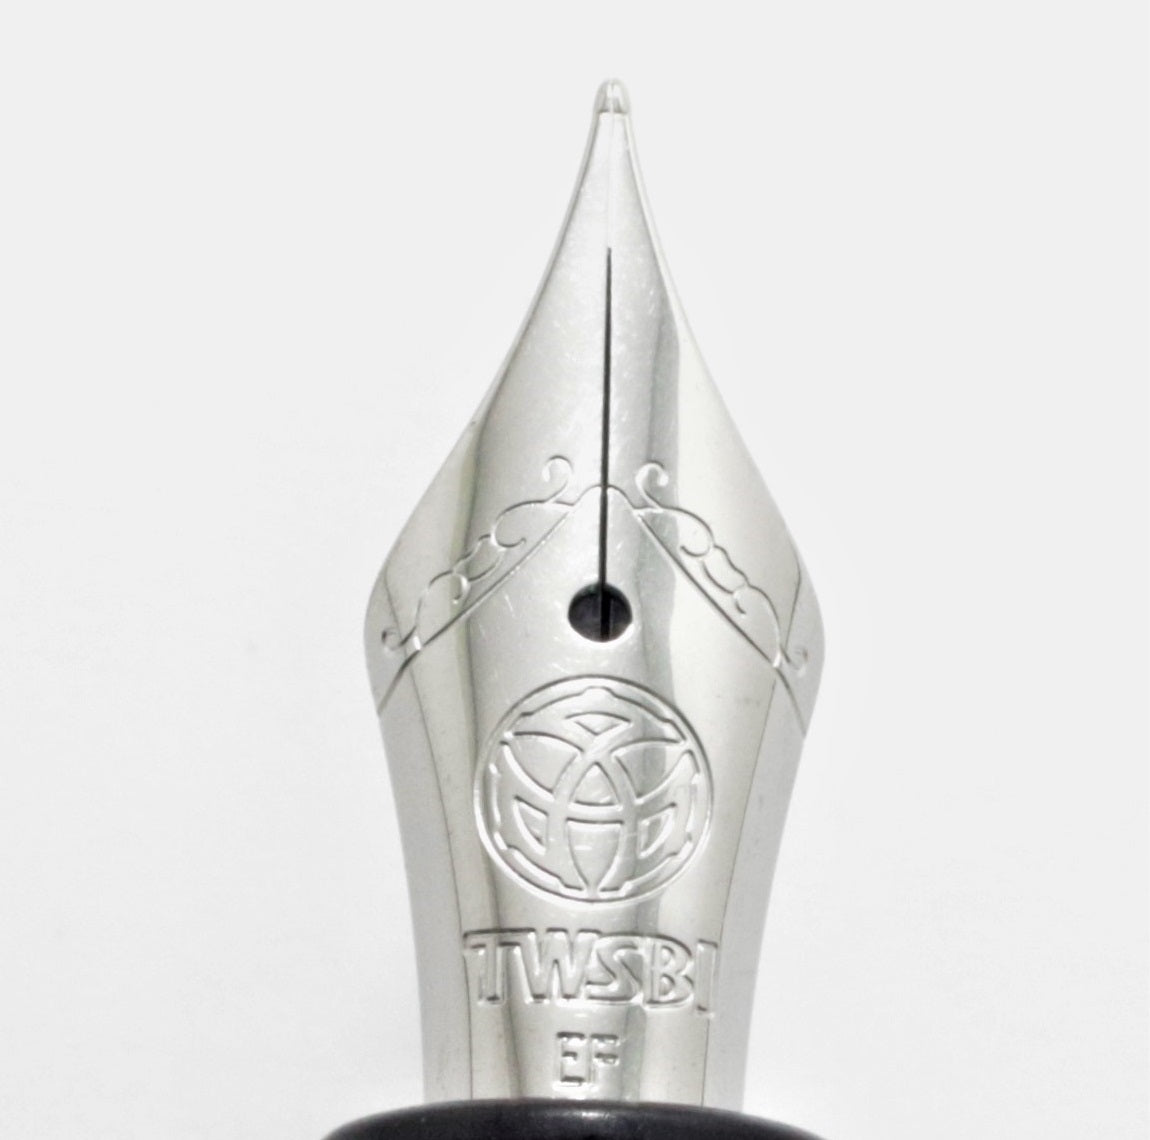 [TWSBI] Diamond mini AL Fountain Pen